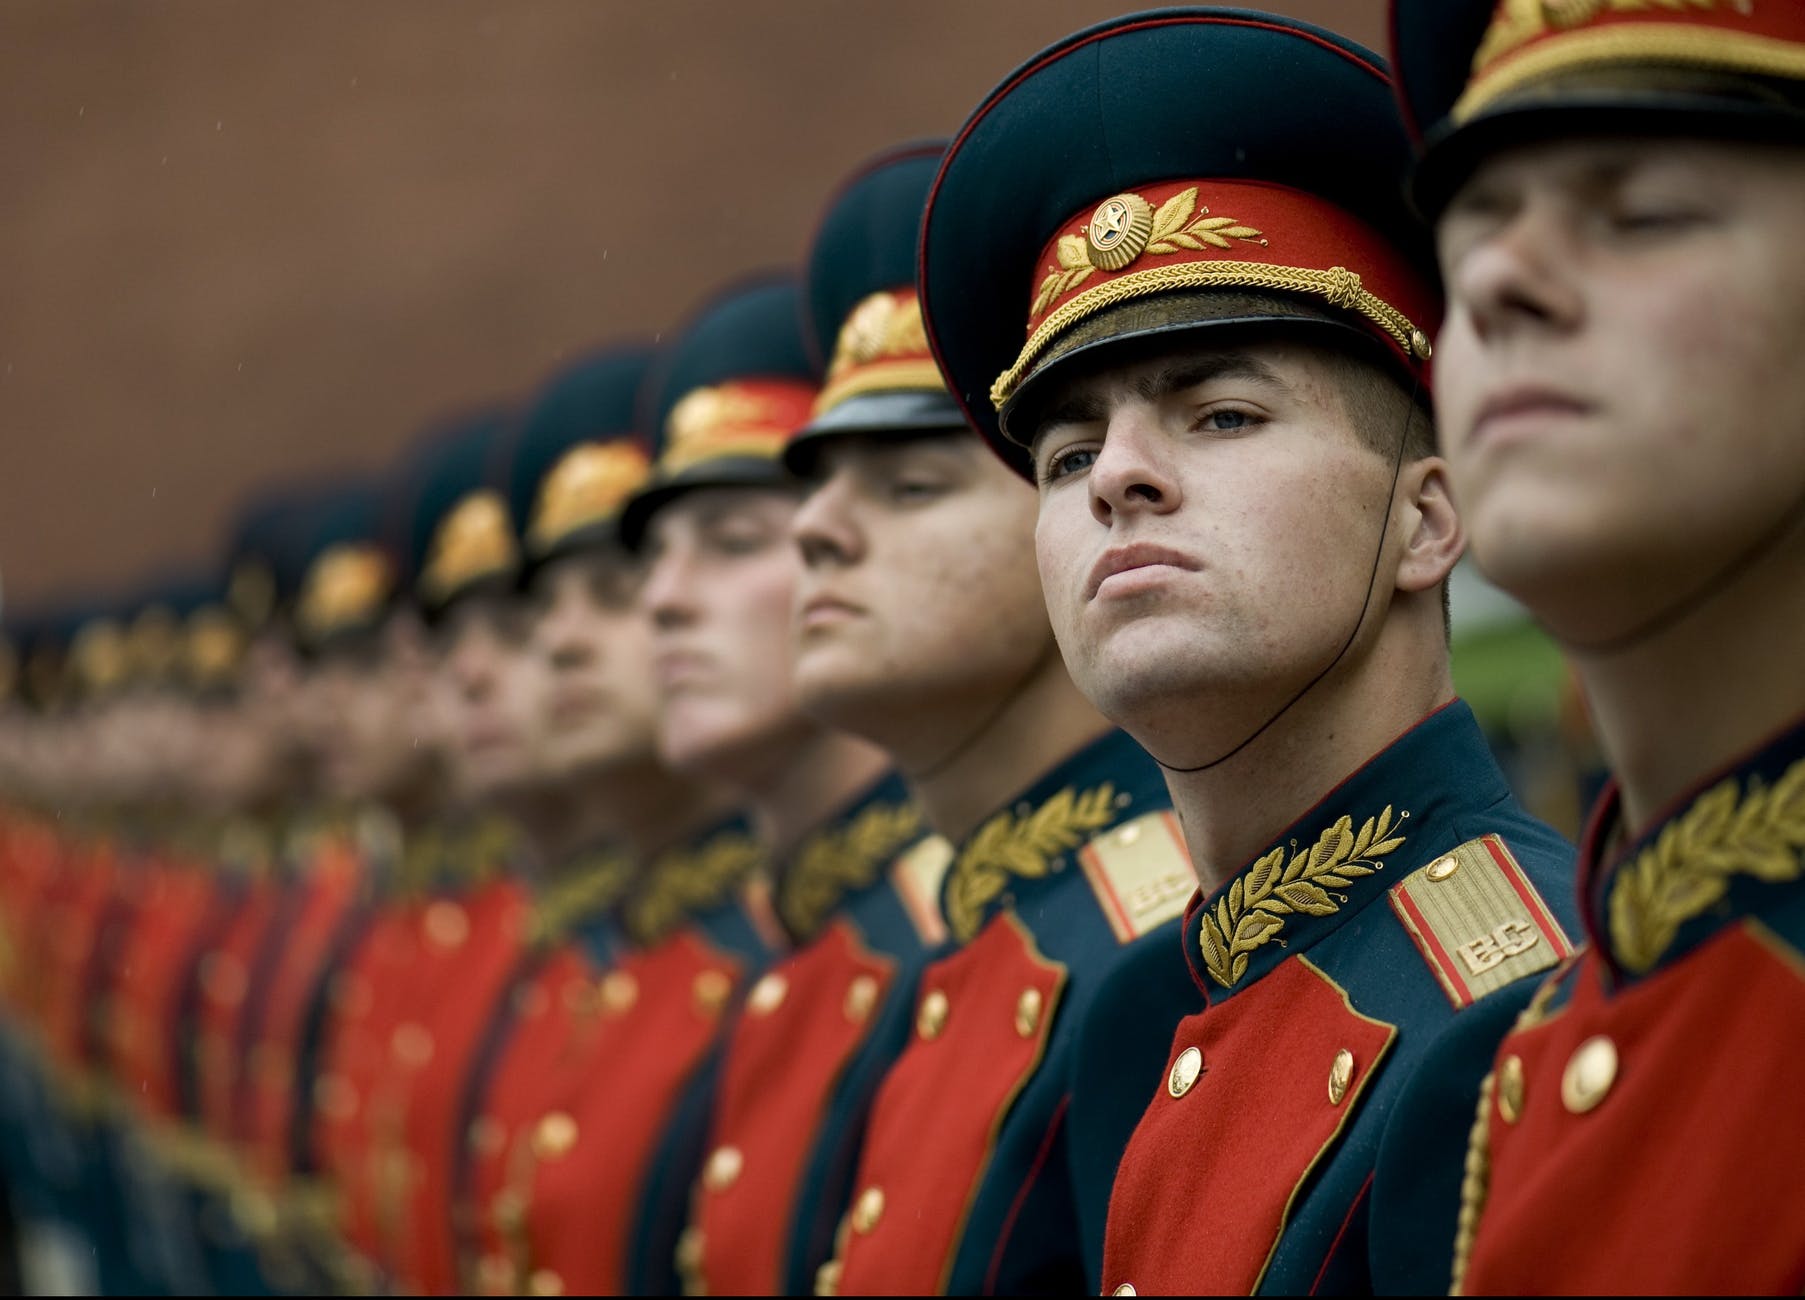 honor-guard-15s-guard-russian-73869.jpeg